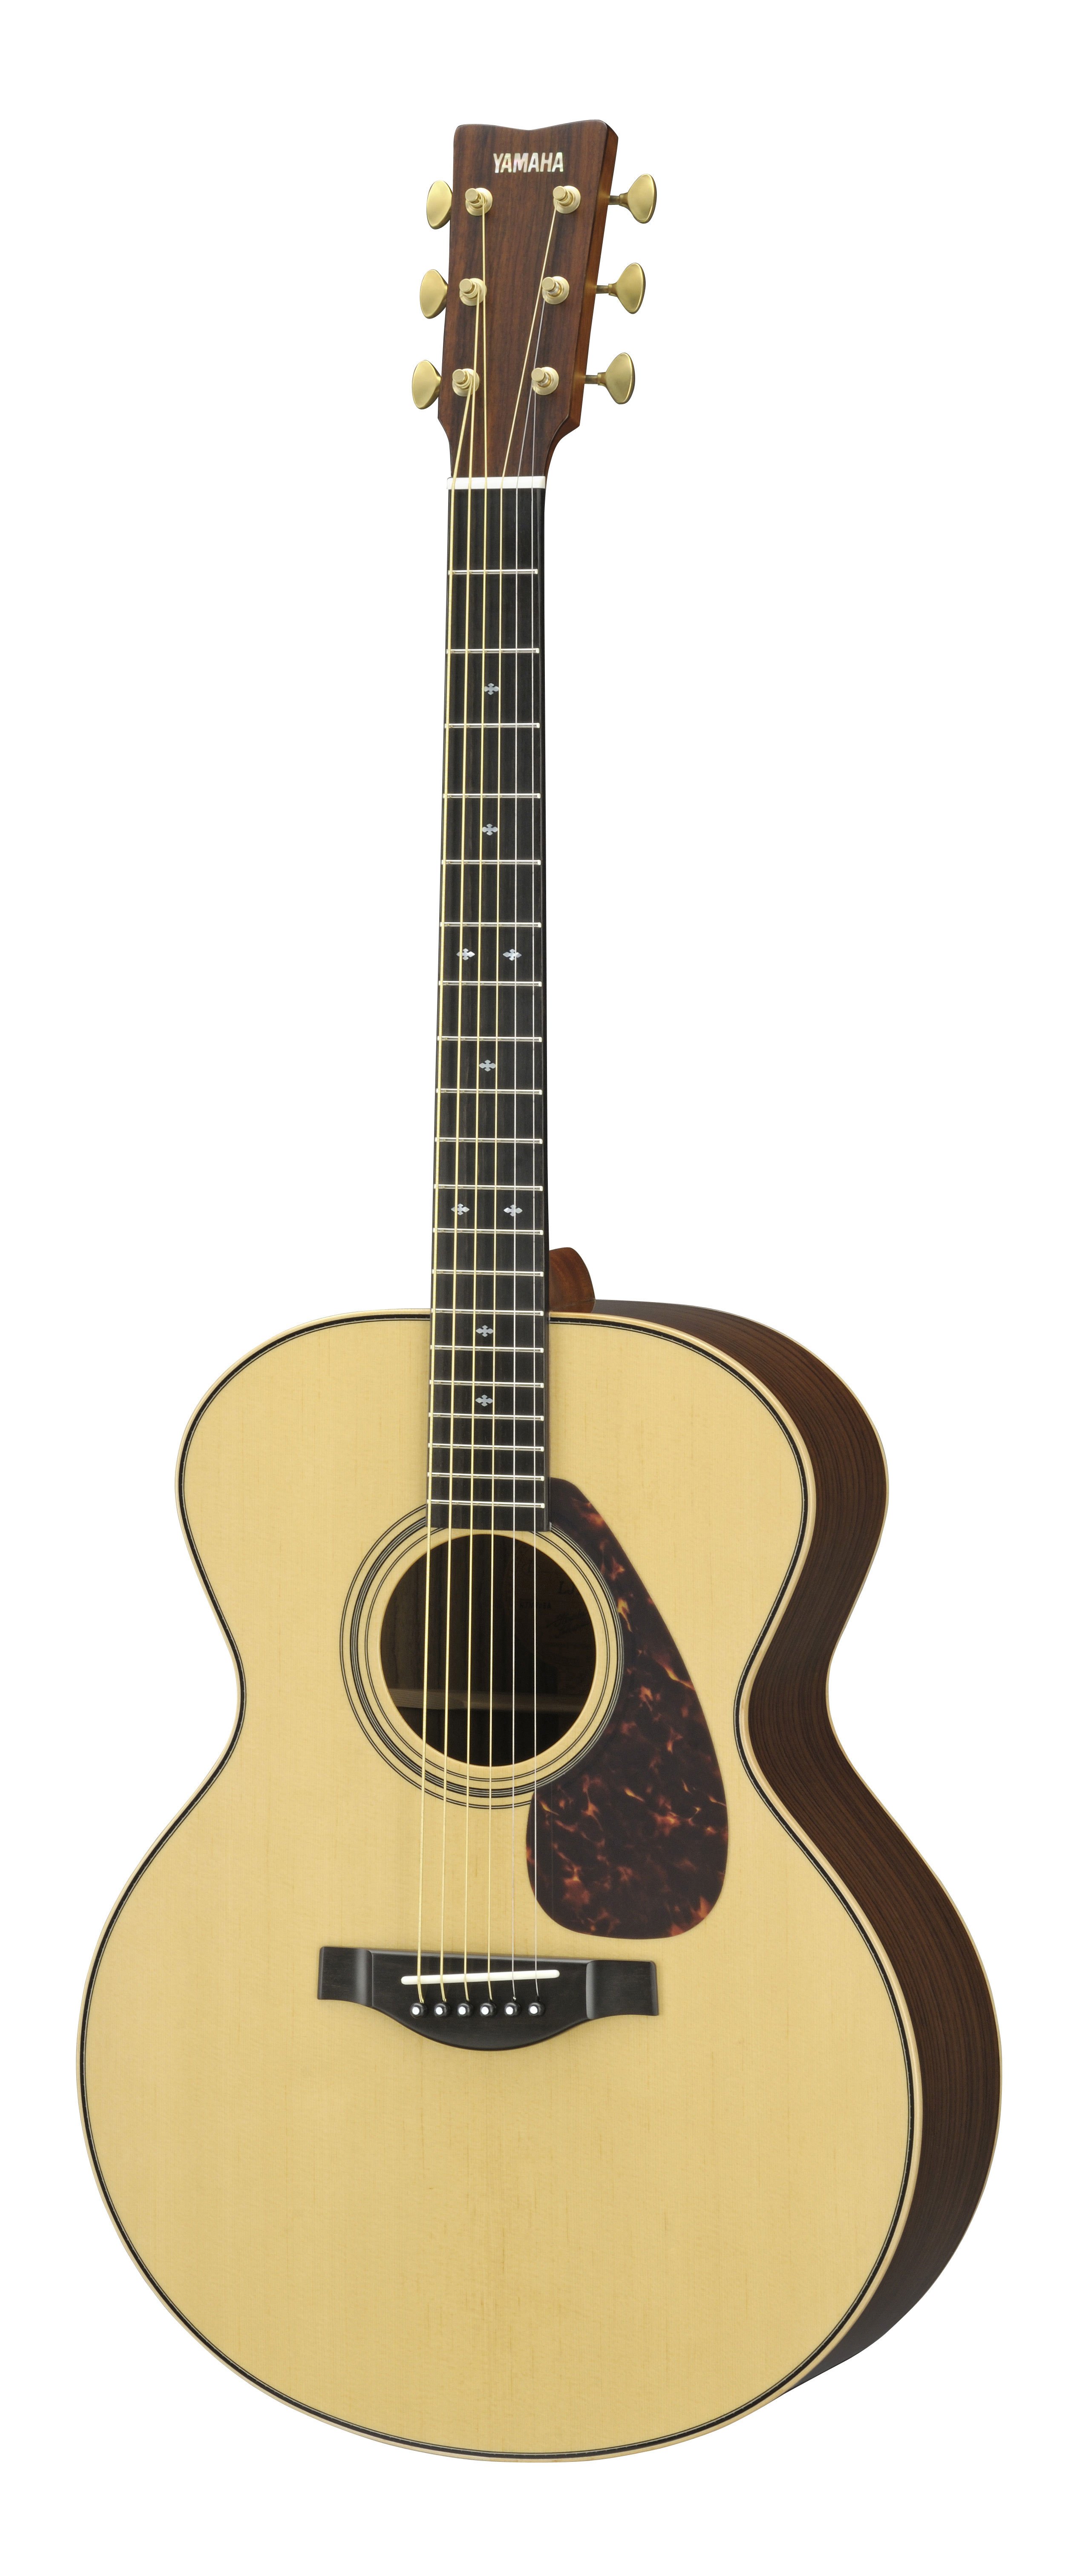 L Series - LJ Series - Acoustic Guitars - Guitars, Basses & Amps